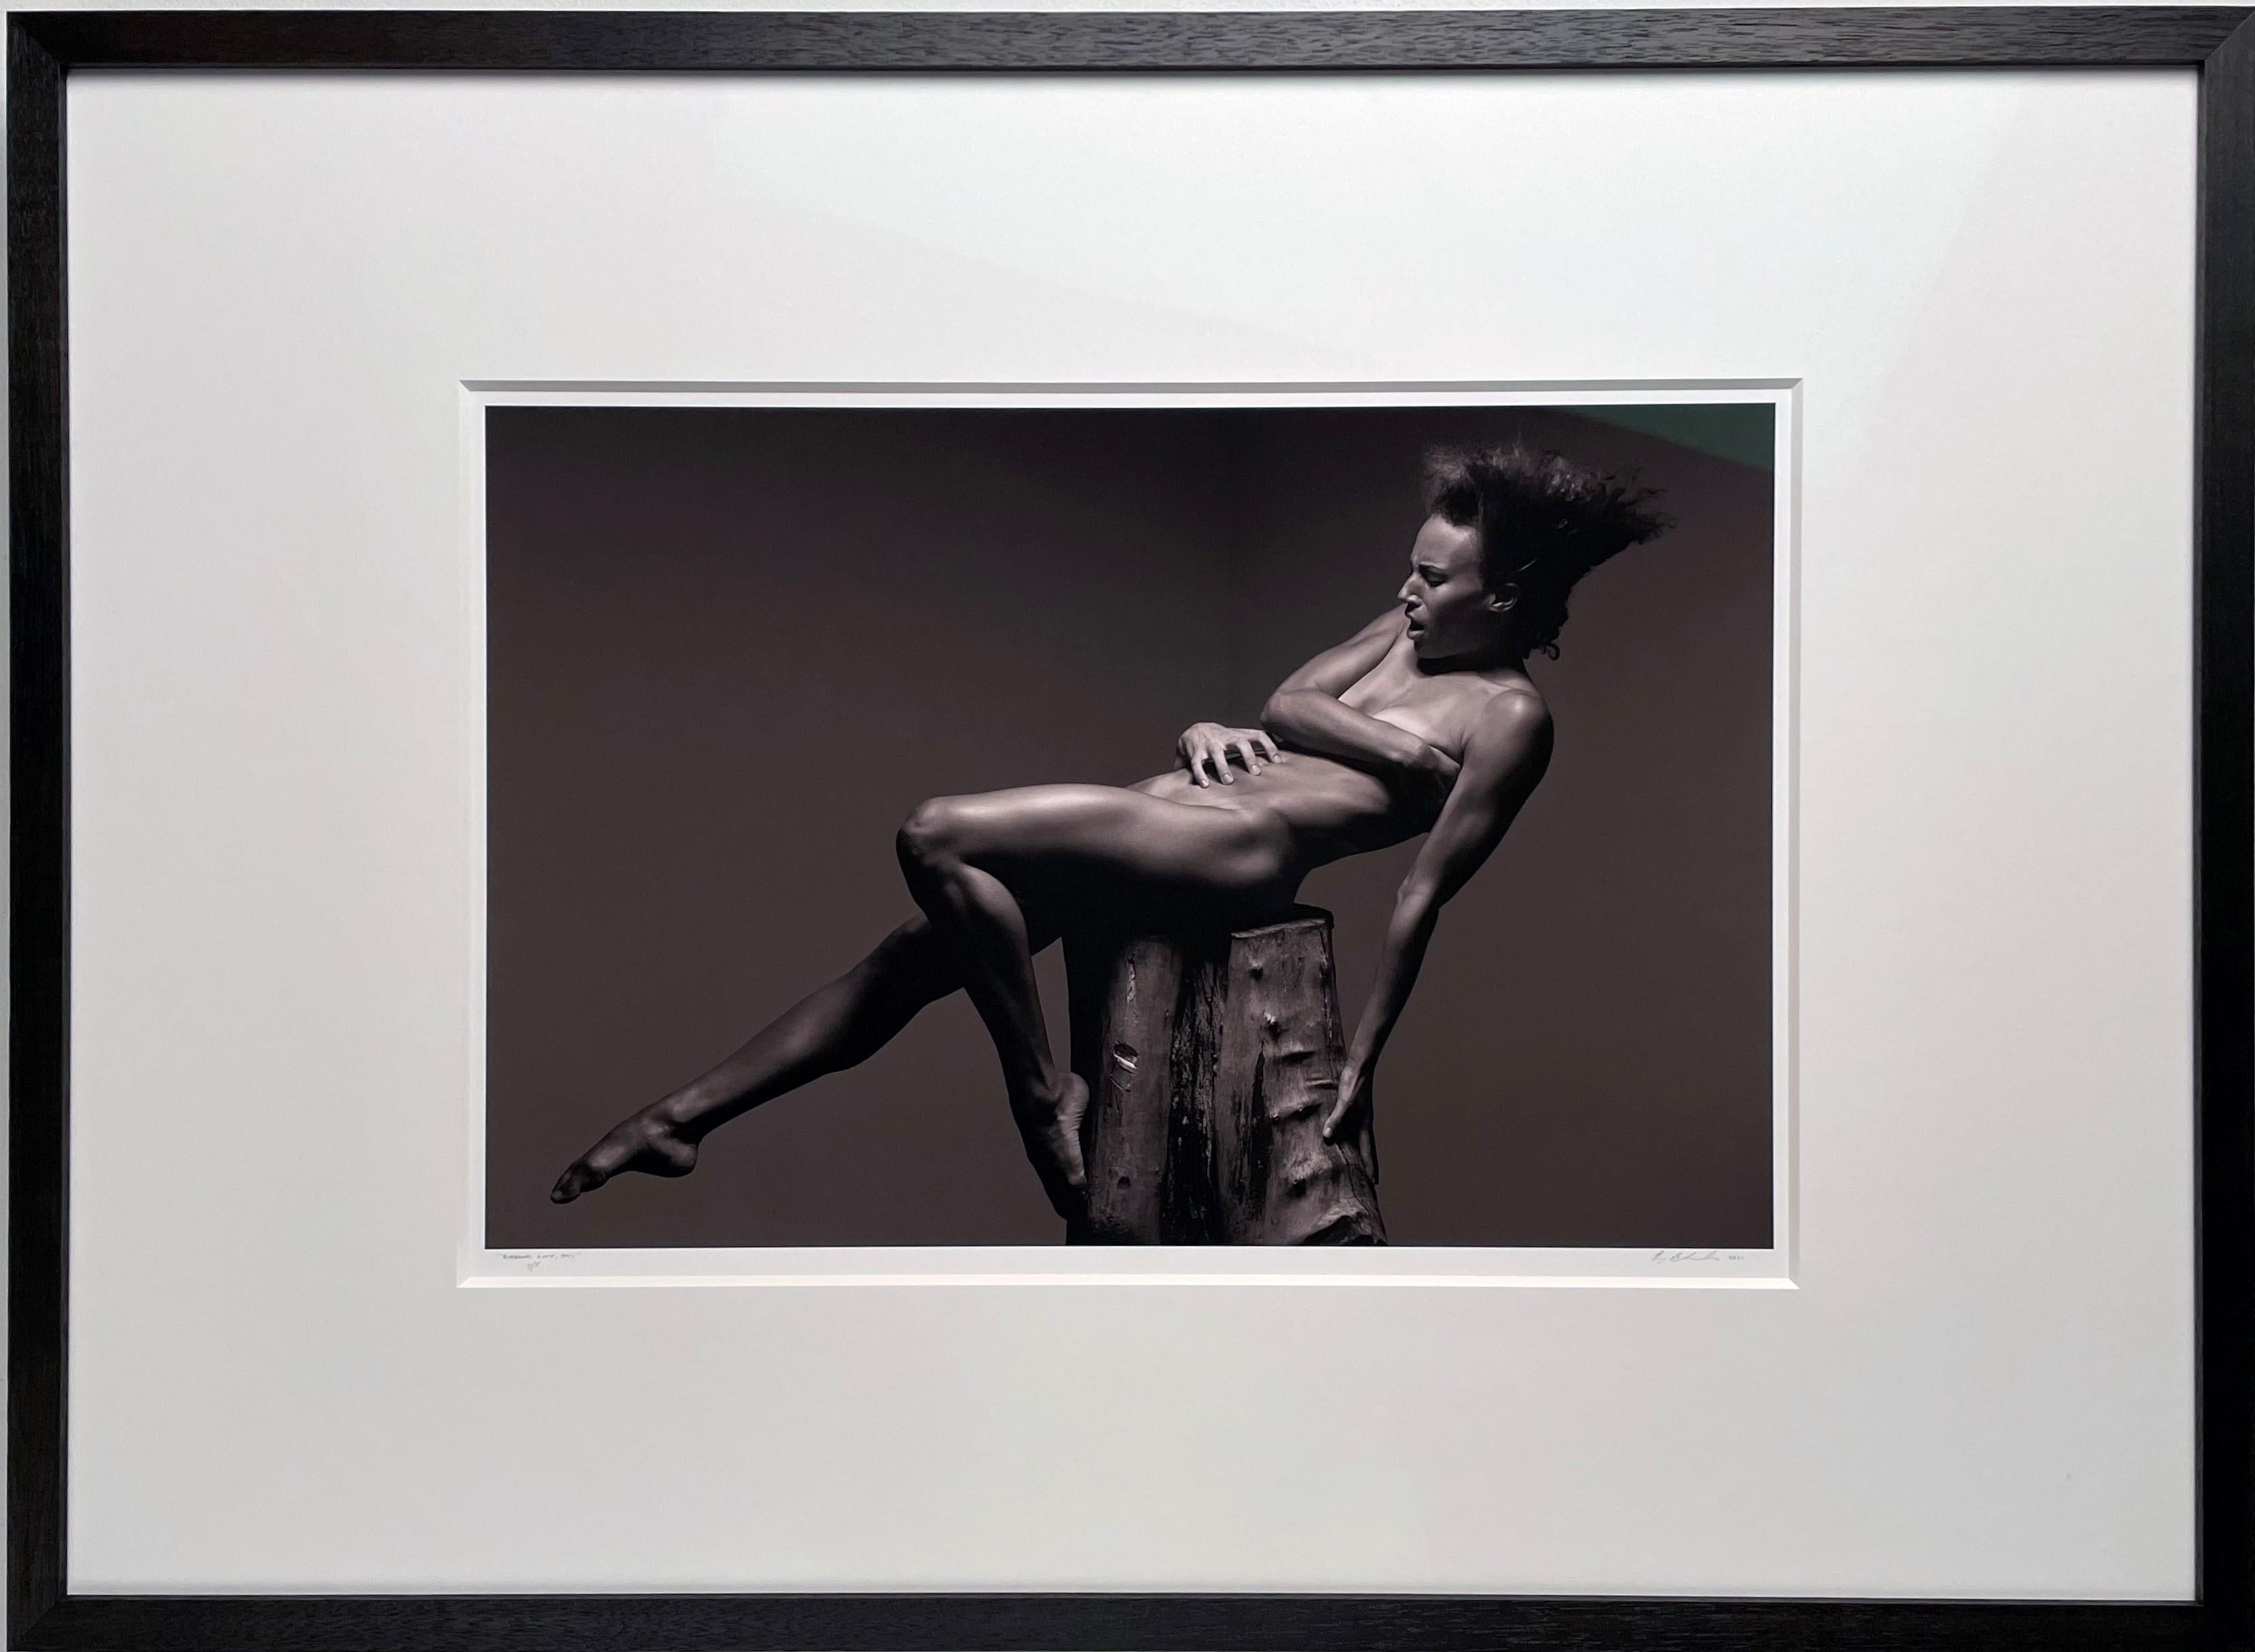 Diagonal Lift - Nude Female Balanced on a Pedestal, Photographie en noir et blanc  - Noir Black and White Photograph par Doug Birkenheuer